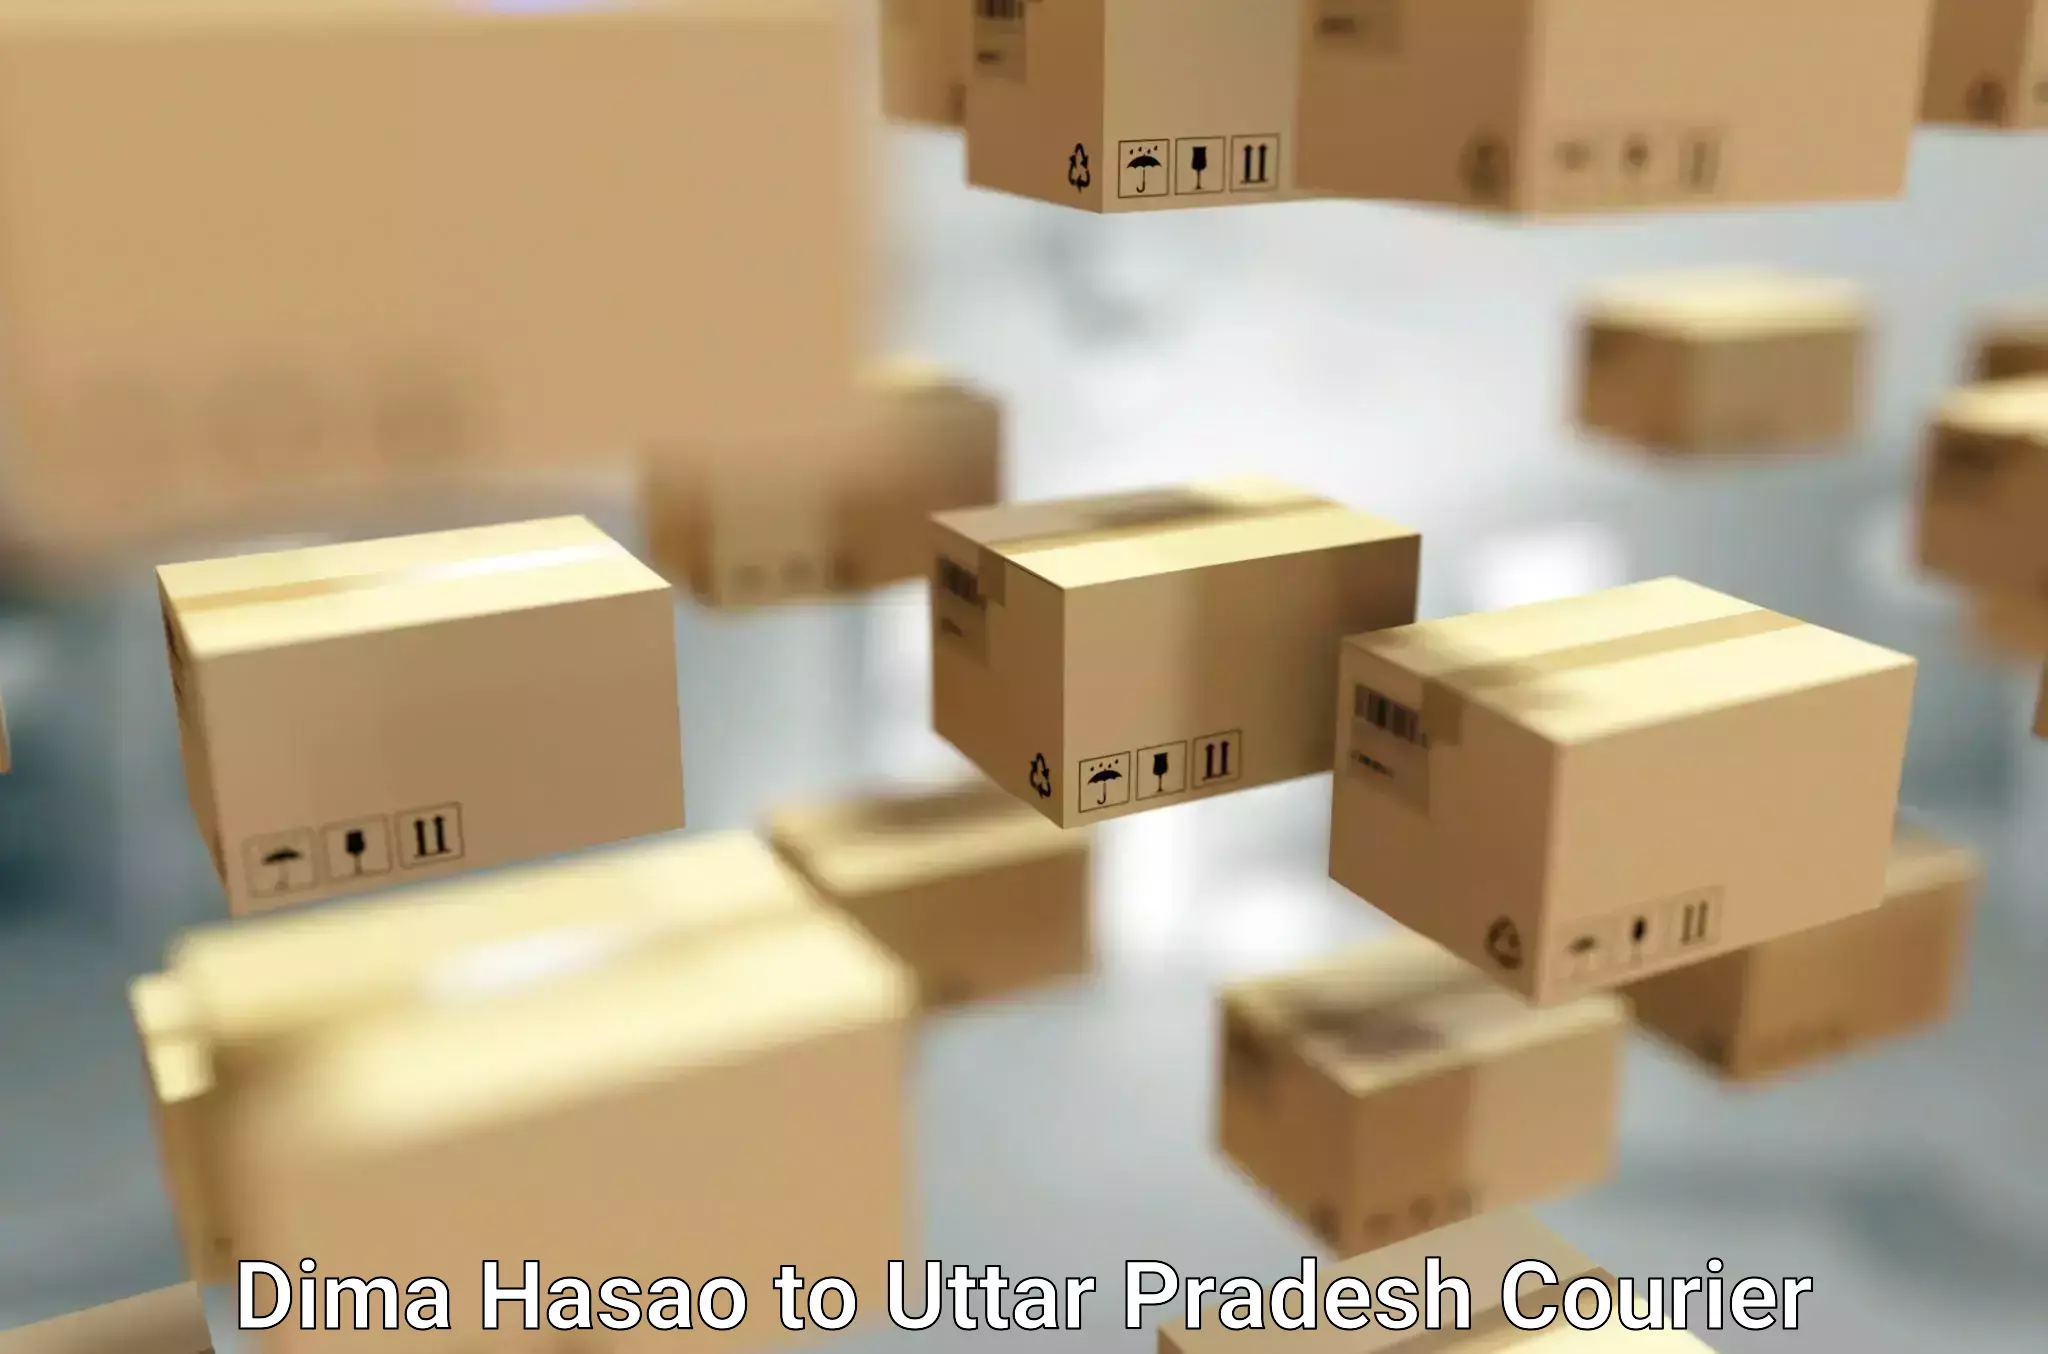 Furniture moving strategies Dima Hasao to Uttar Pradesh